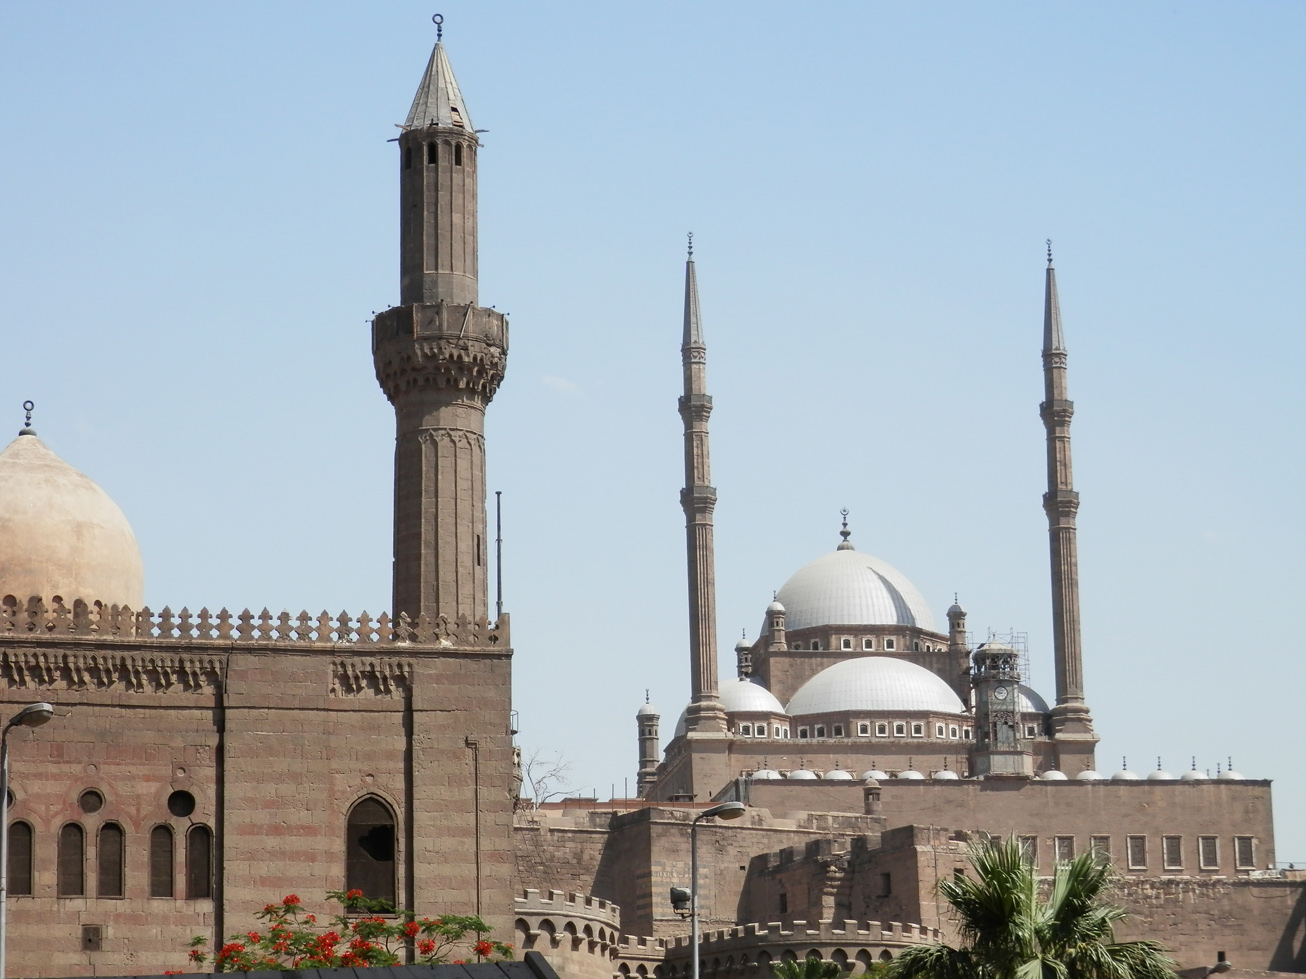 Cette mosquée est copiée sur la basilique Sainte-Sophie, à Istanbul (que j'aimerais bien aller visiter, d'ailleurs).